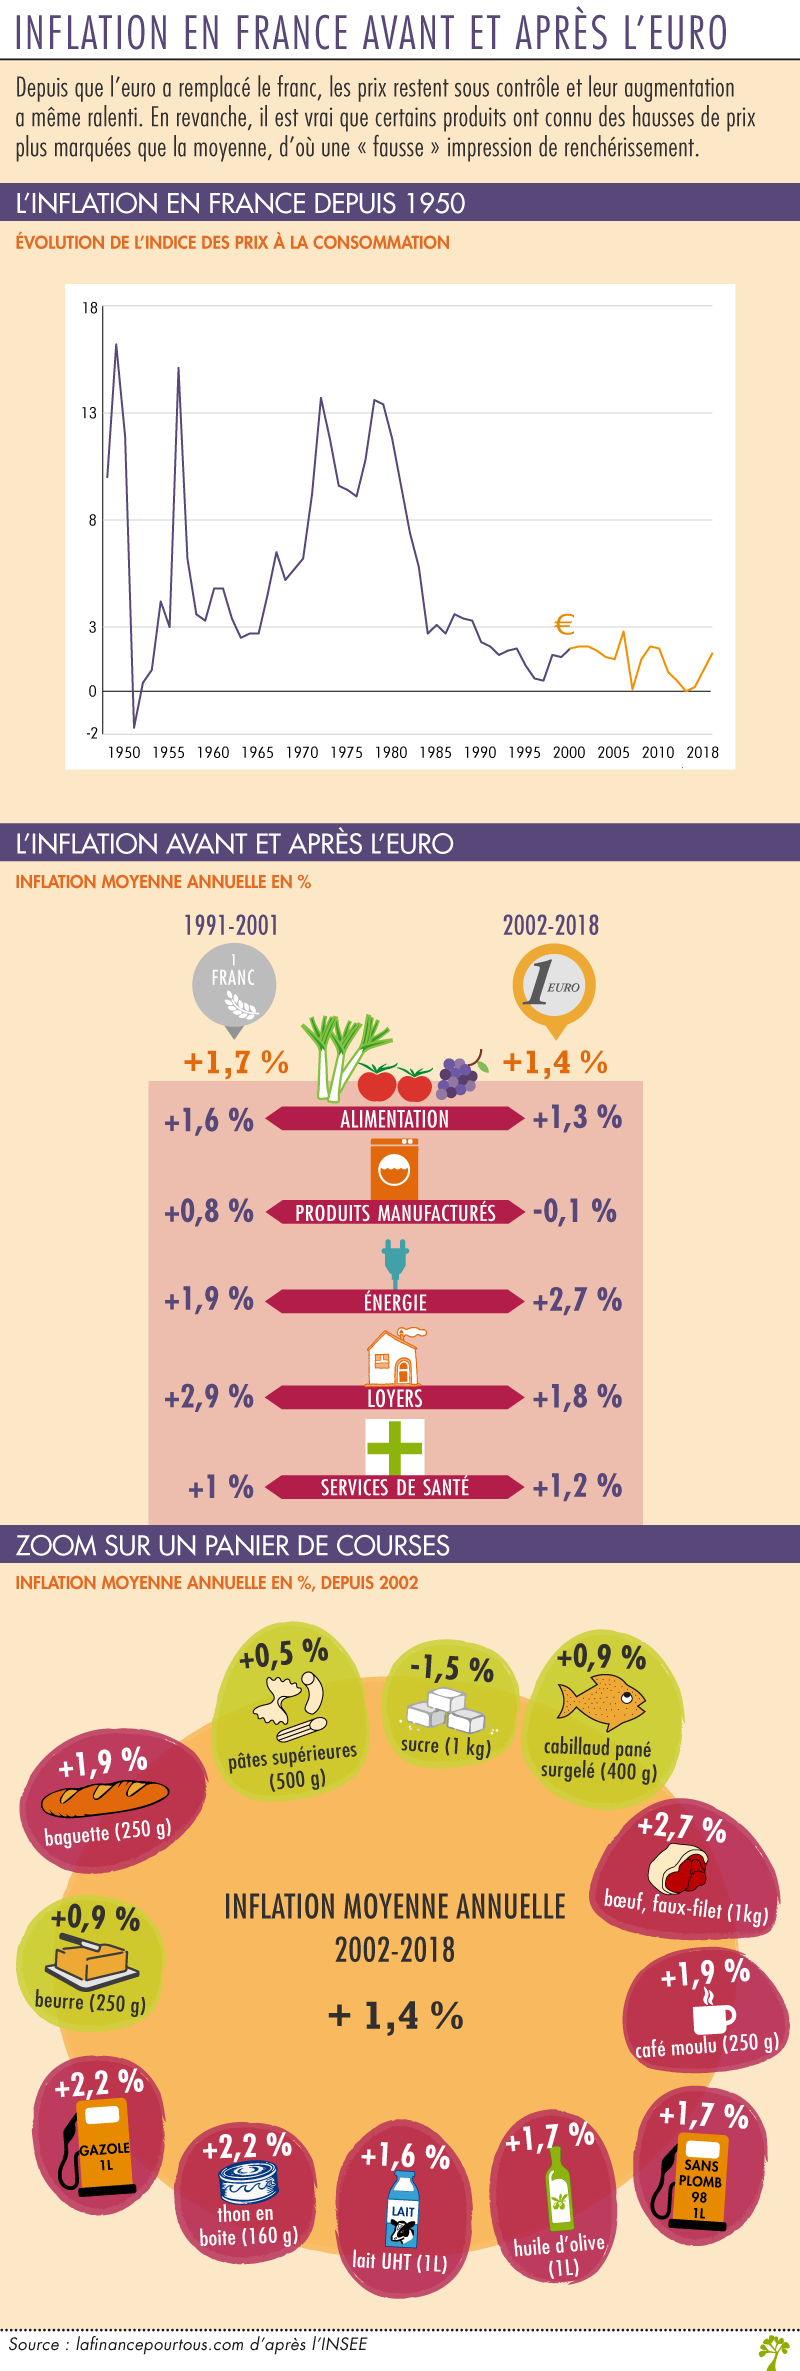 L'inflation en France